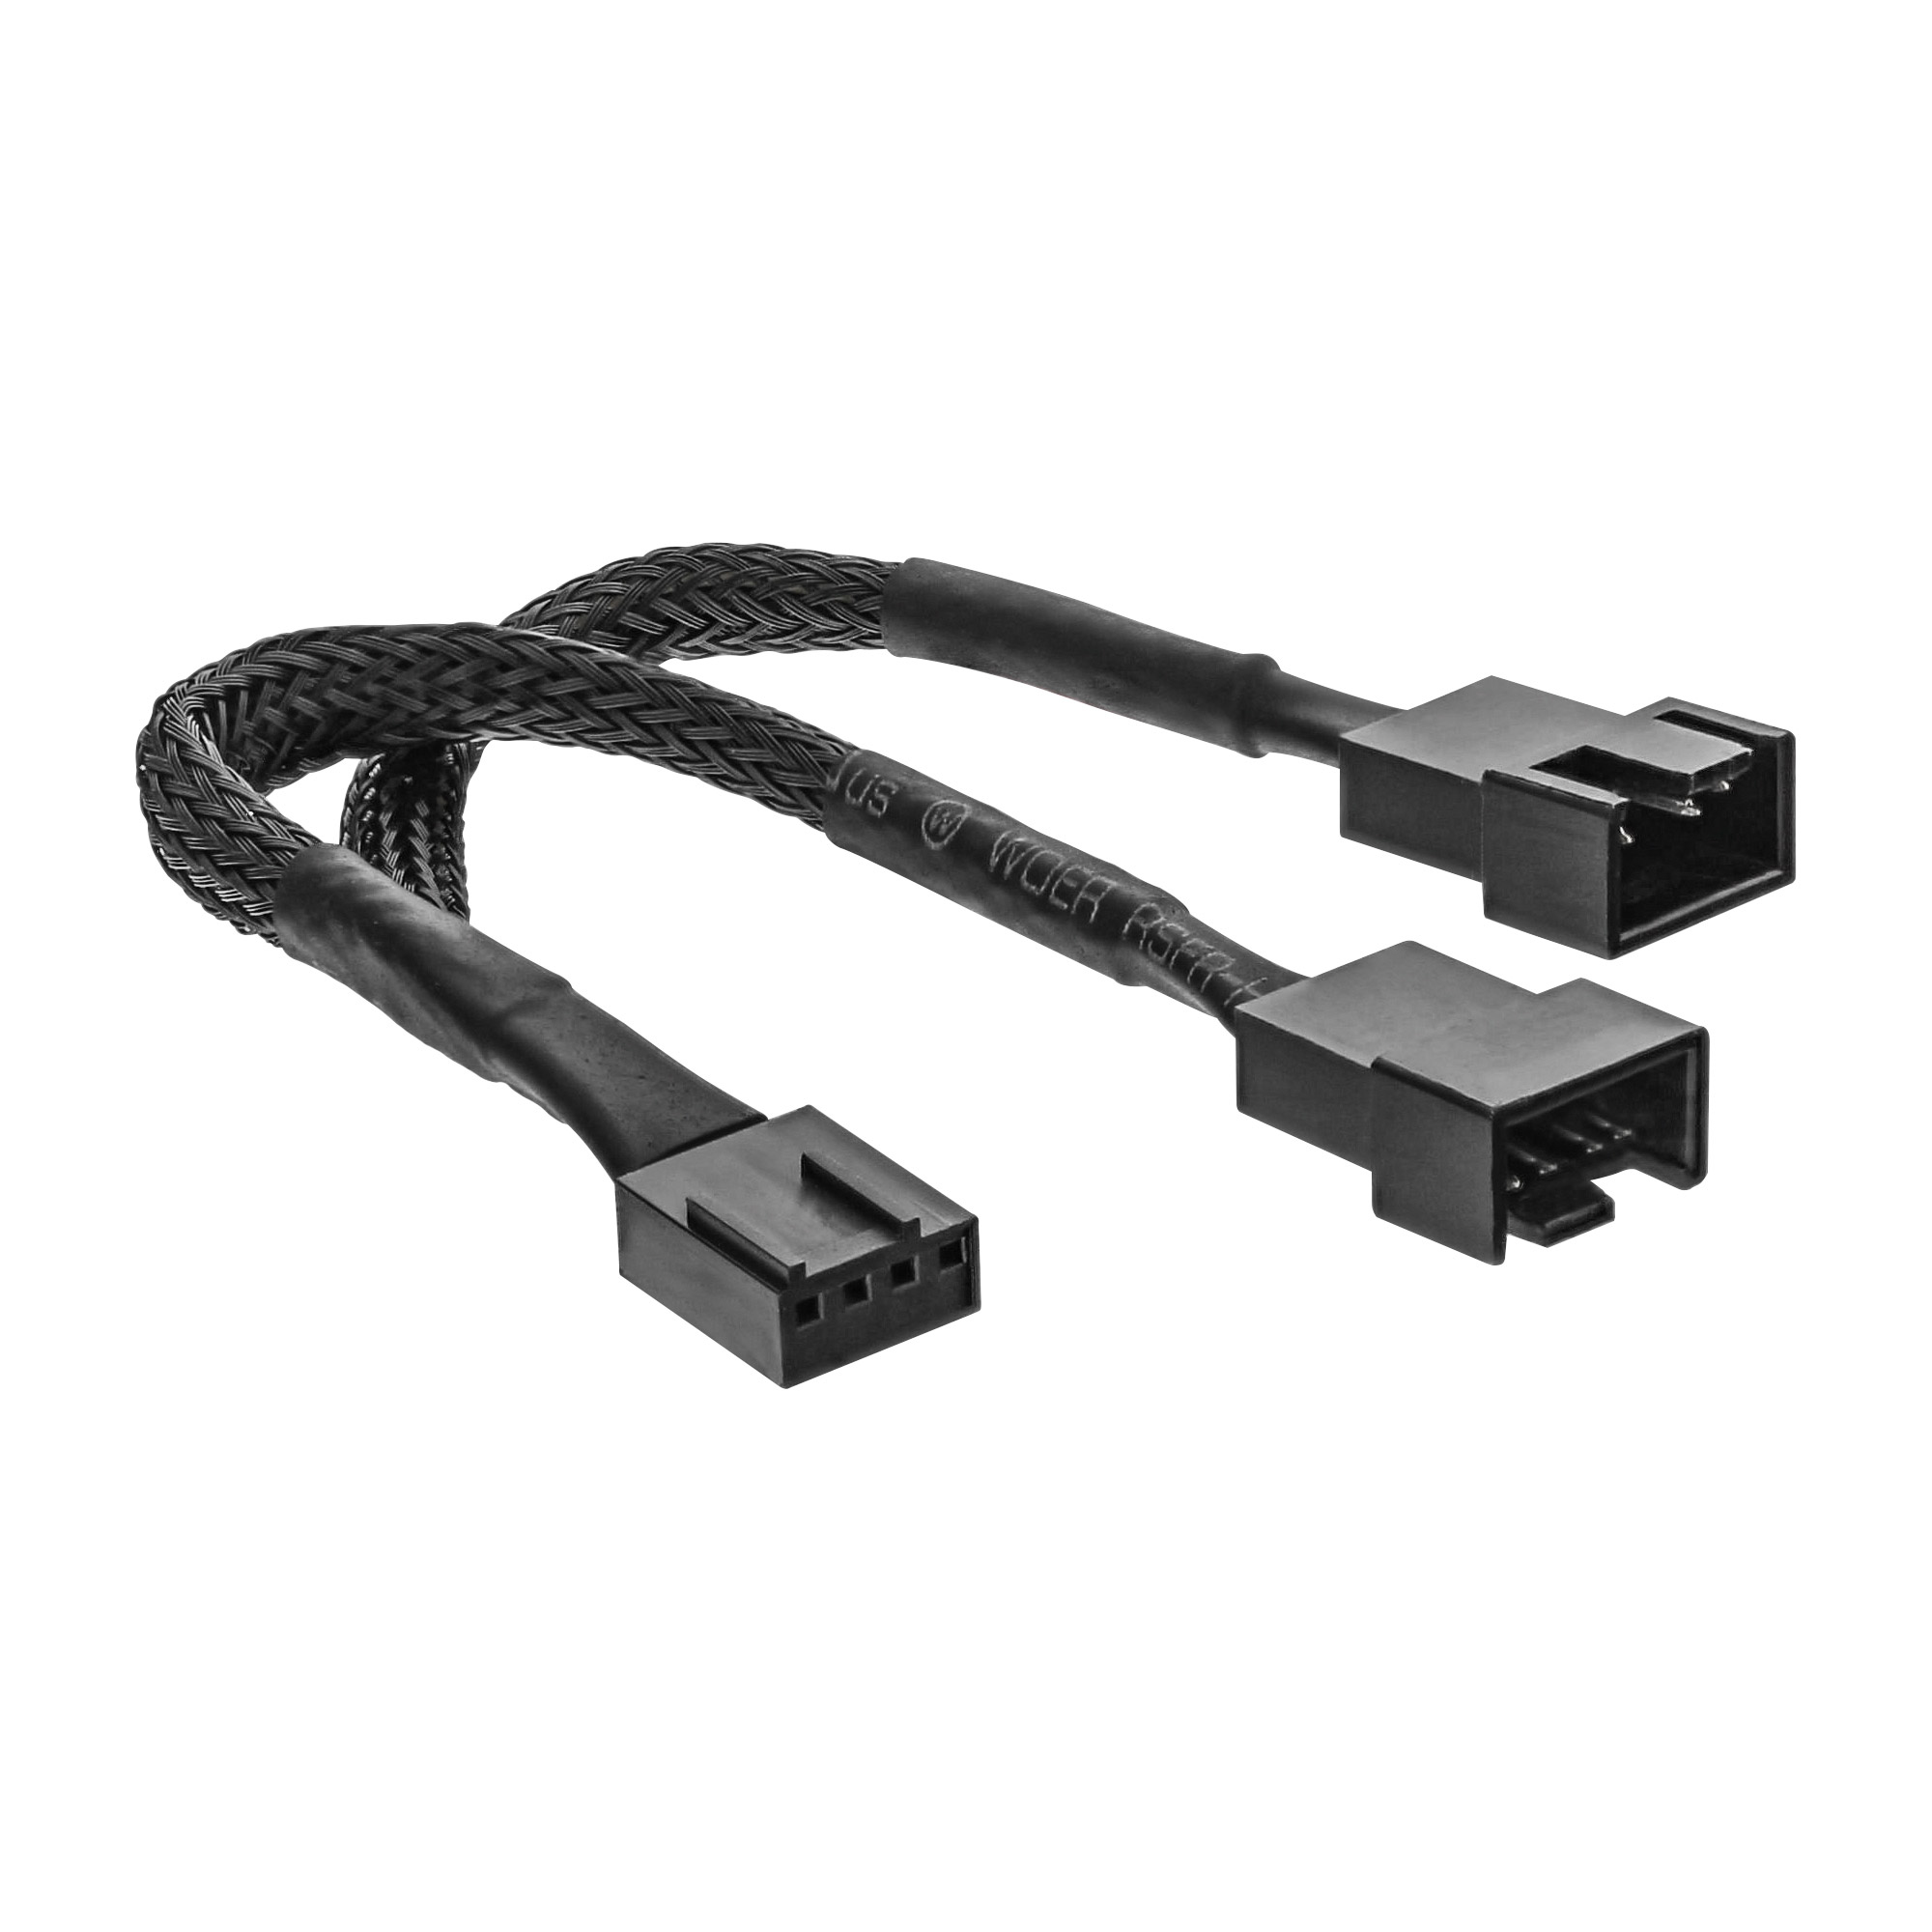 InLine Y-cable - Netzsplitter für Lüfter - 4-polig PWM (M)